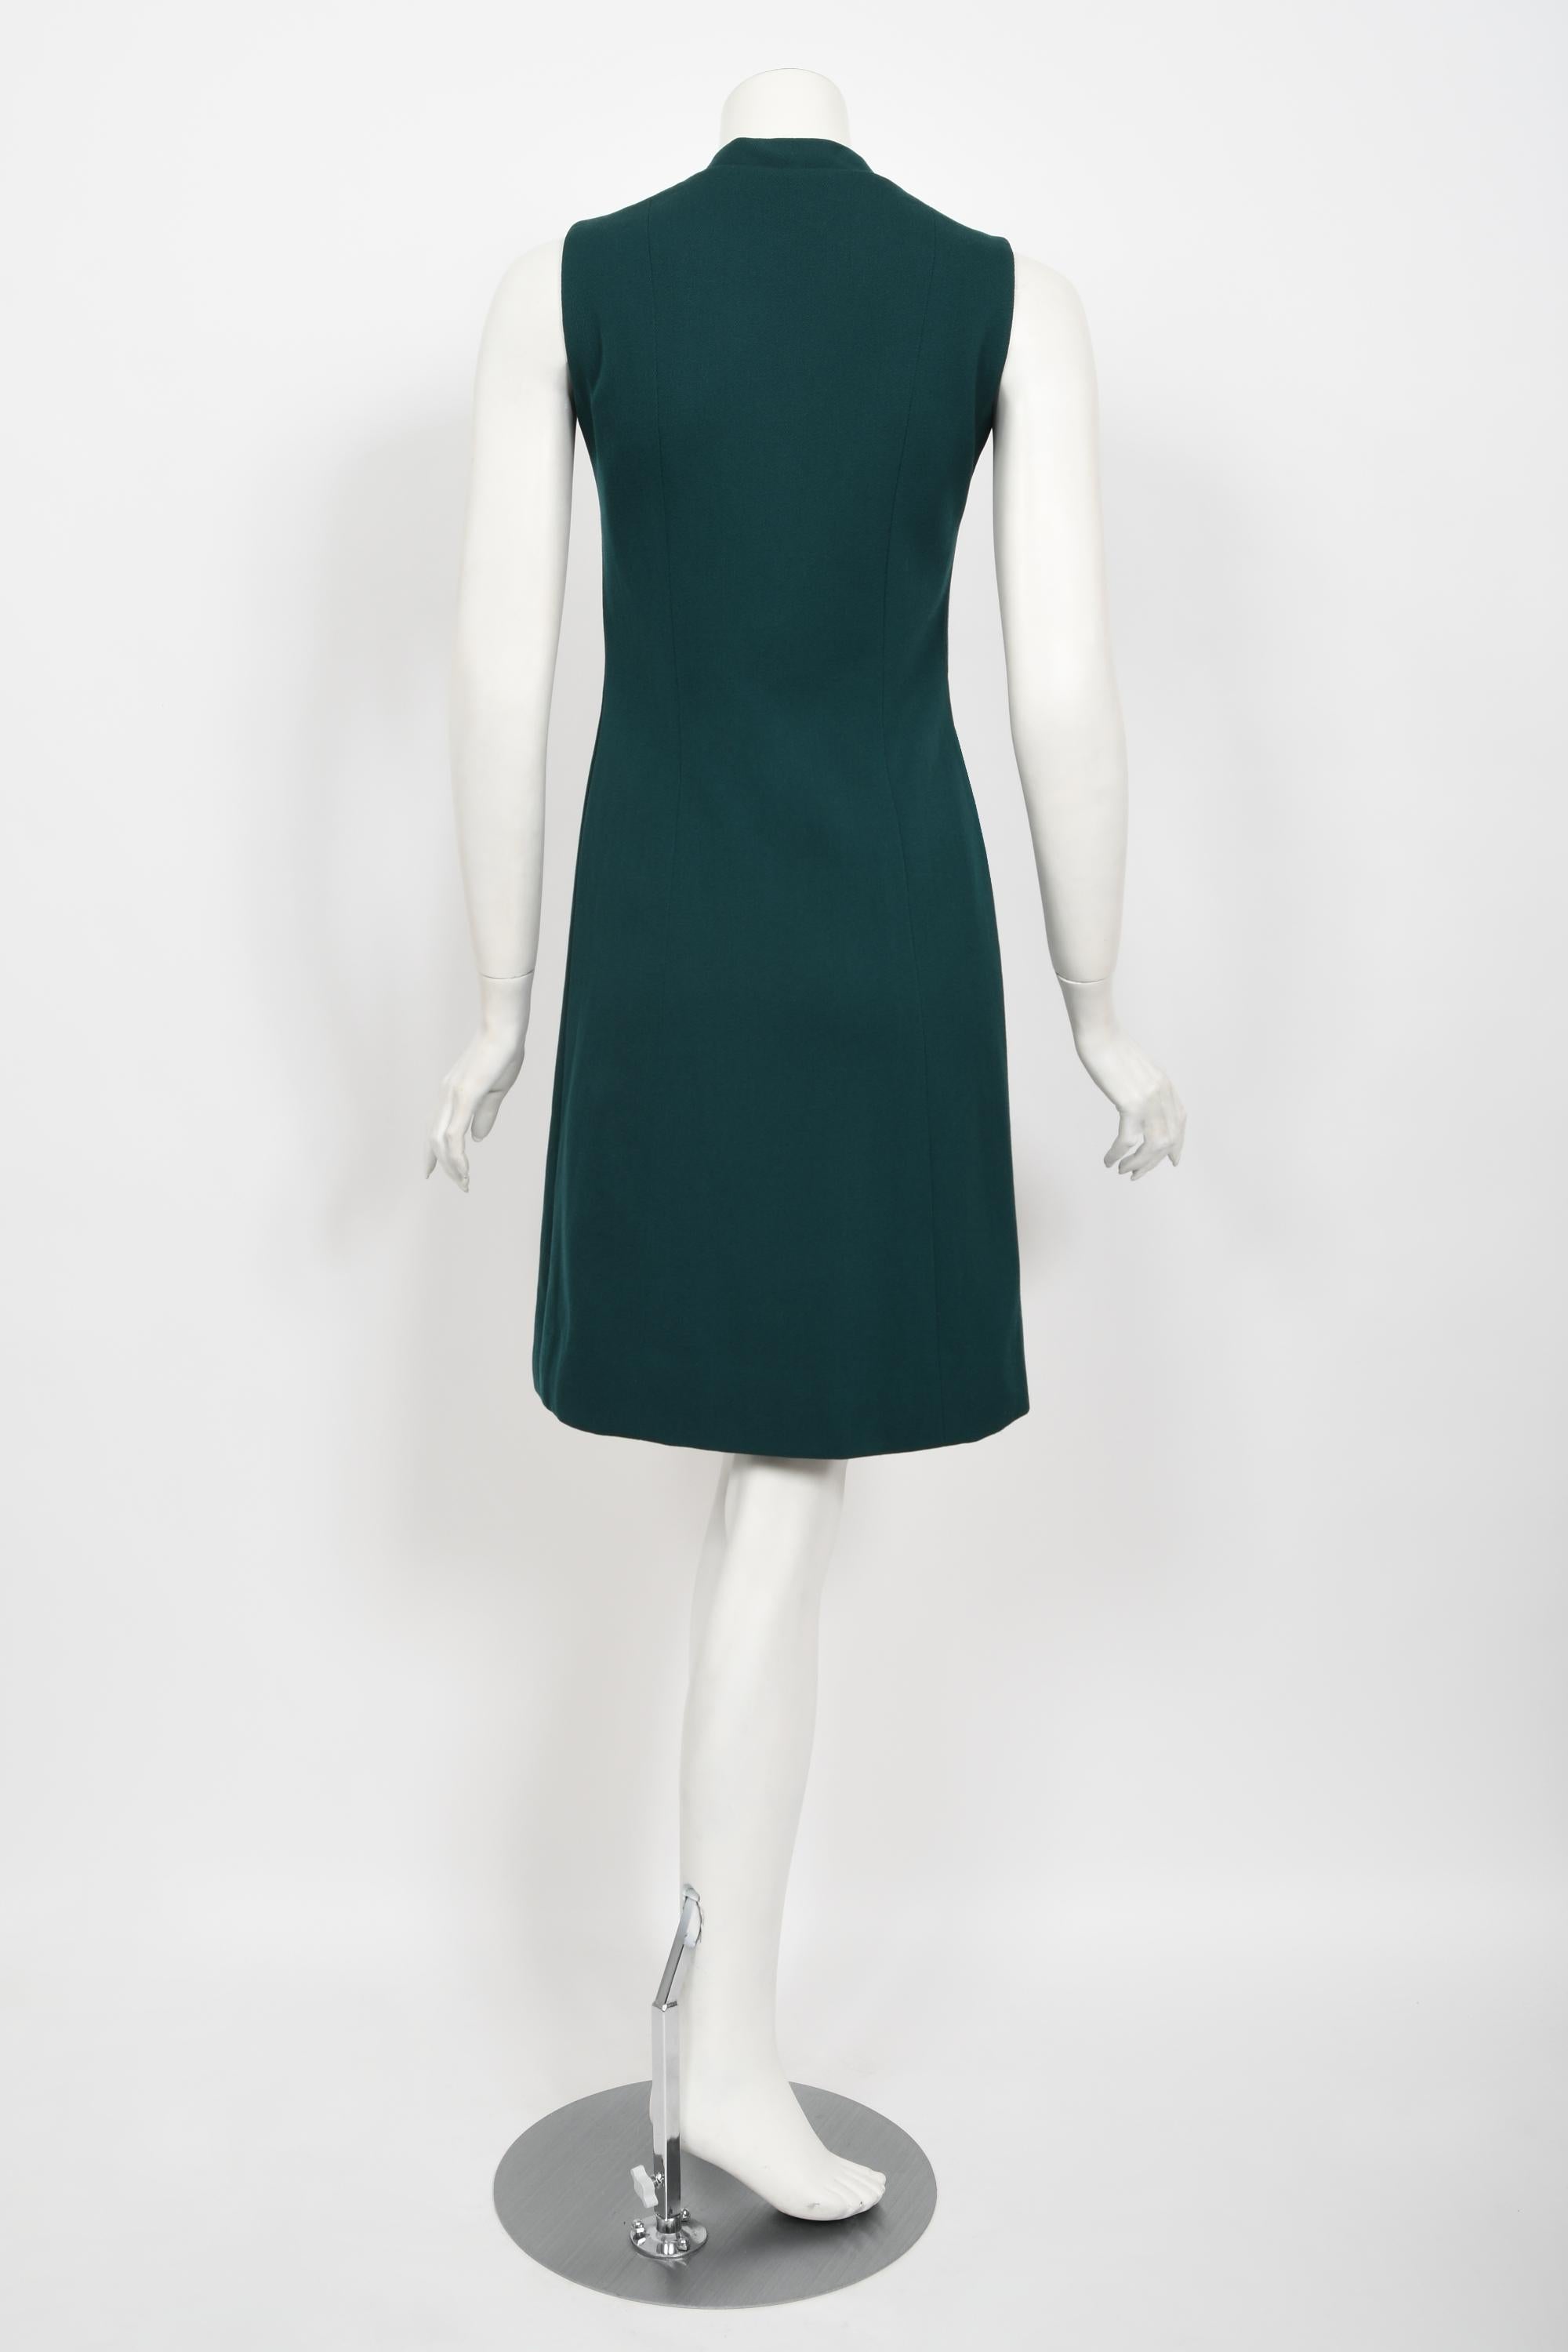 Vintage 1966 Jacques Esterel Haute Couture Documented Teal Blue Op-Art Mod Dress For Sale 8